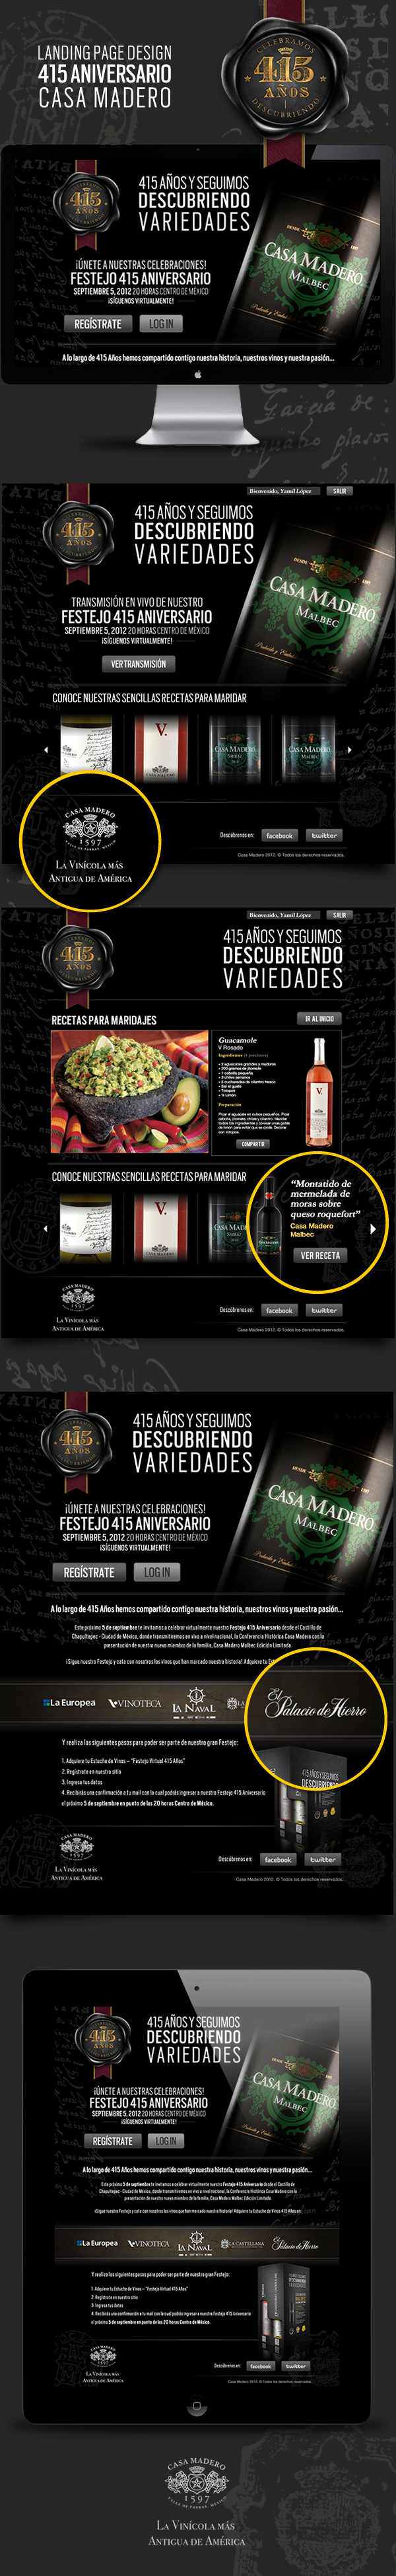 casa madero aniversário mexico parras coahuila danilo black db Web ux UI design wine vino alcohol